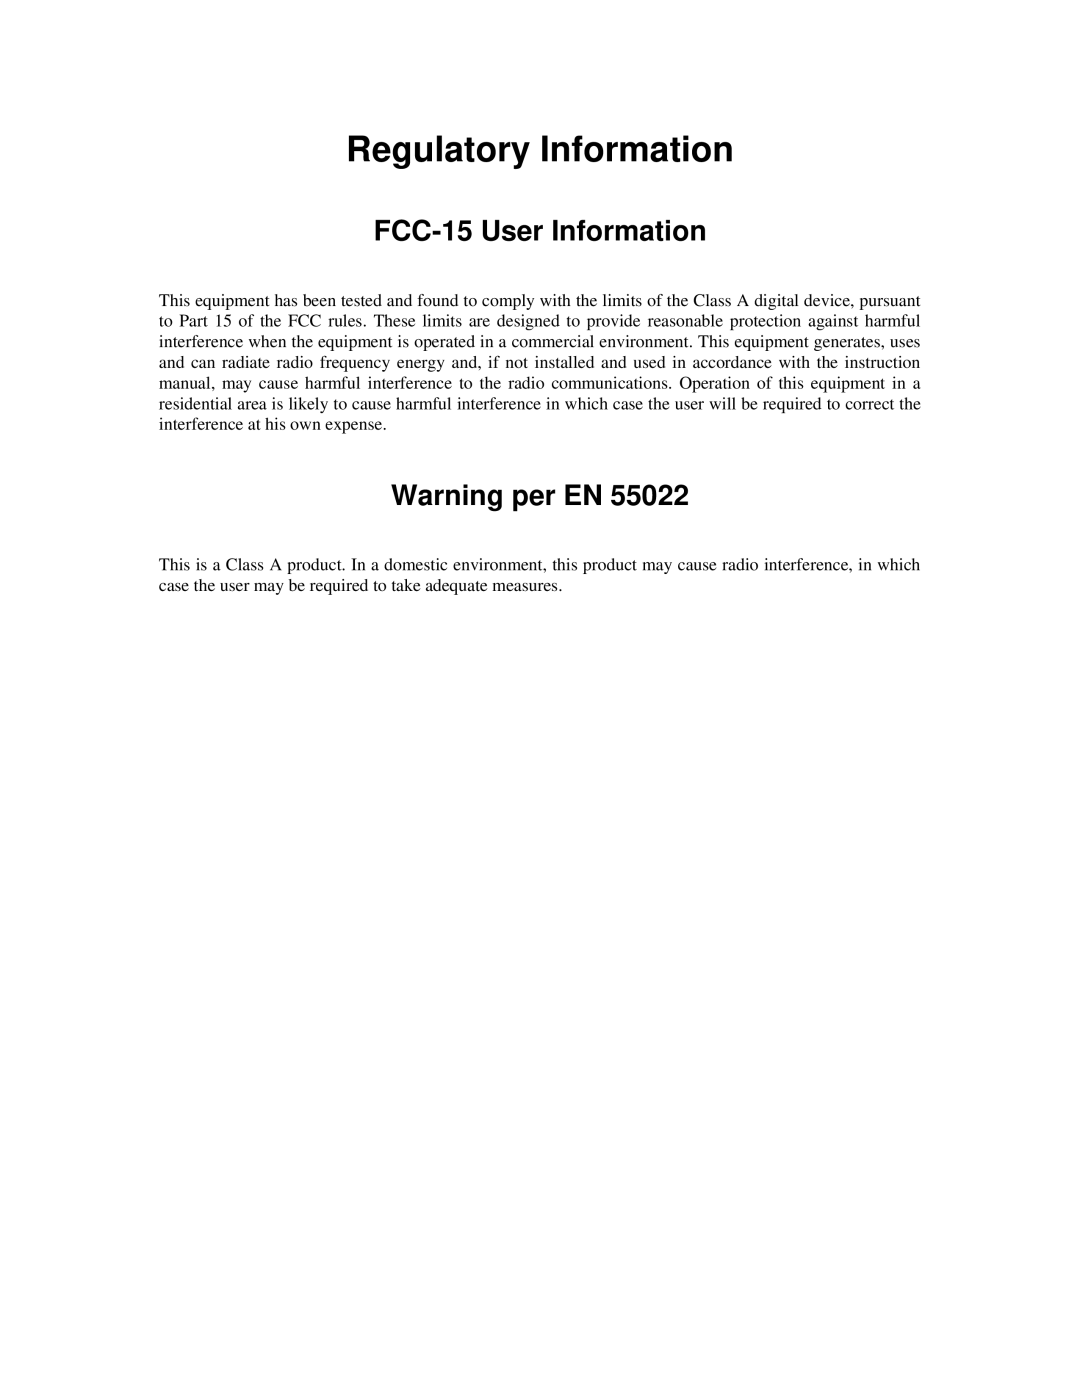 RAD Data comm ASMI-450 operation manual Regulatory Information, FCC-15 User Information, Warning per EN 